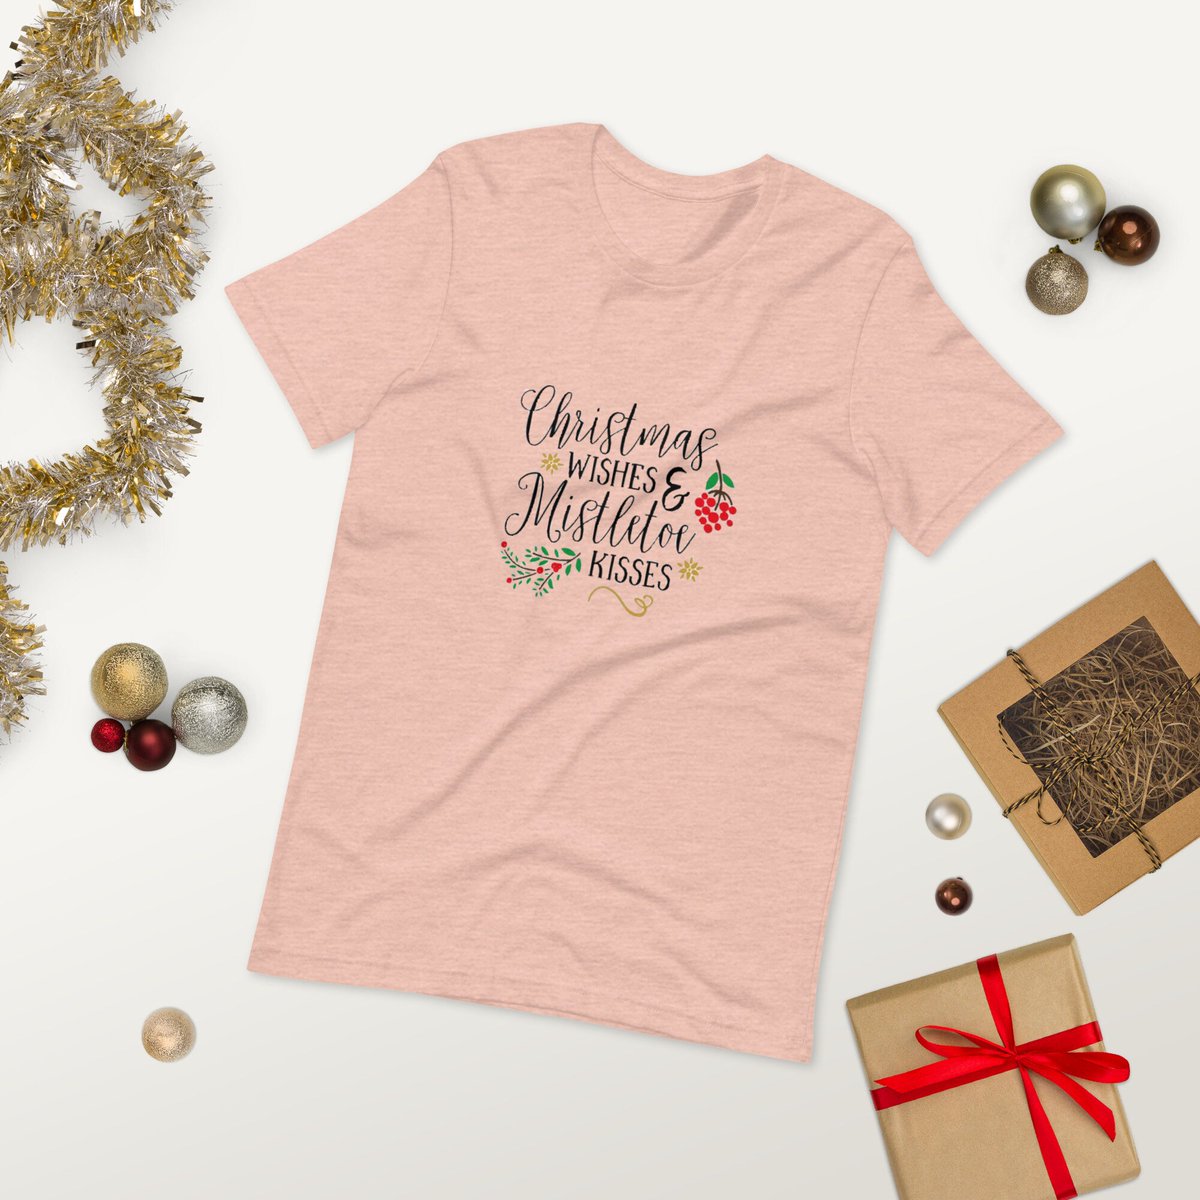 Christmas Wishes Unisex t-shirt, Christmas gifts, Holiday shirt tuppu.net/cbf2e082 #MothersDay #Etsy #EtsyShop #MemorialDay #HandmadeGifts #FourthofJuly #FathersDay #BellaCanvasTshirt